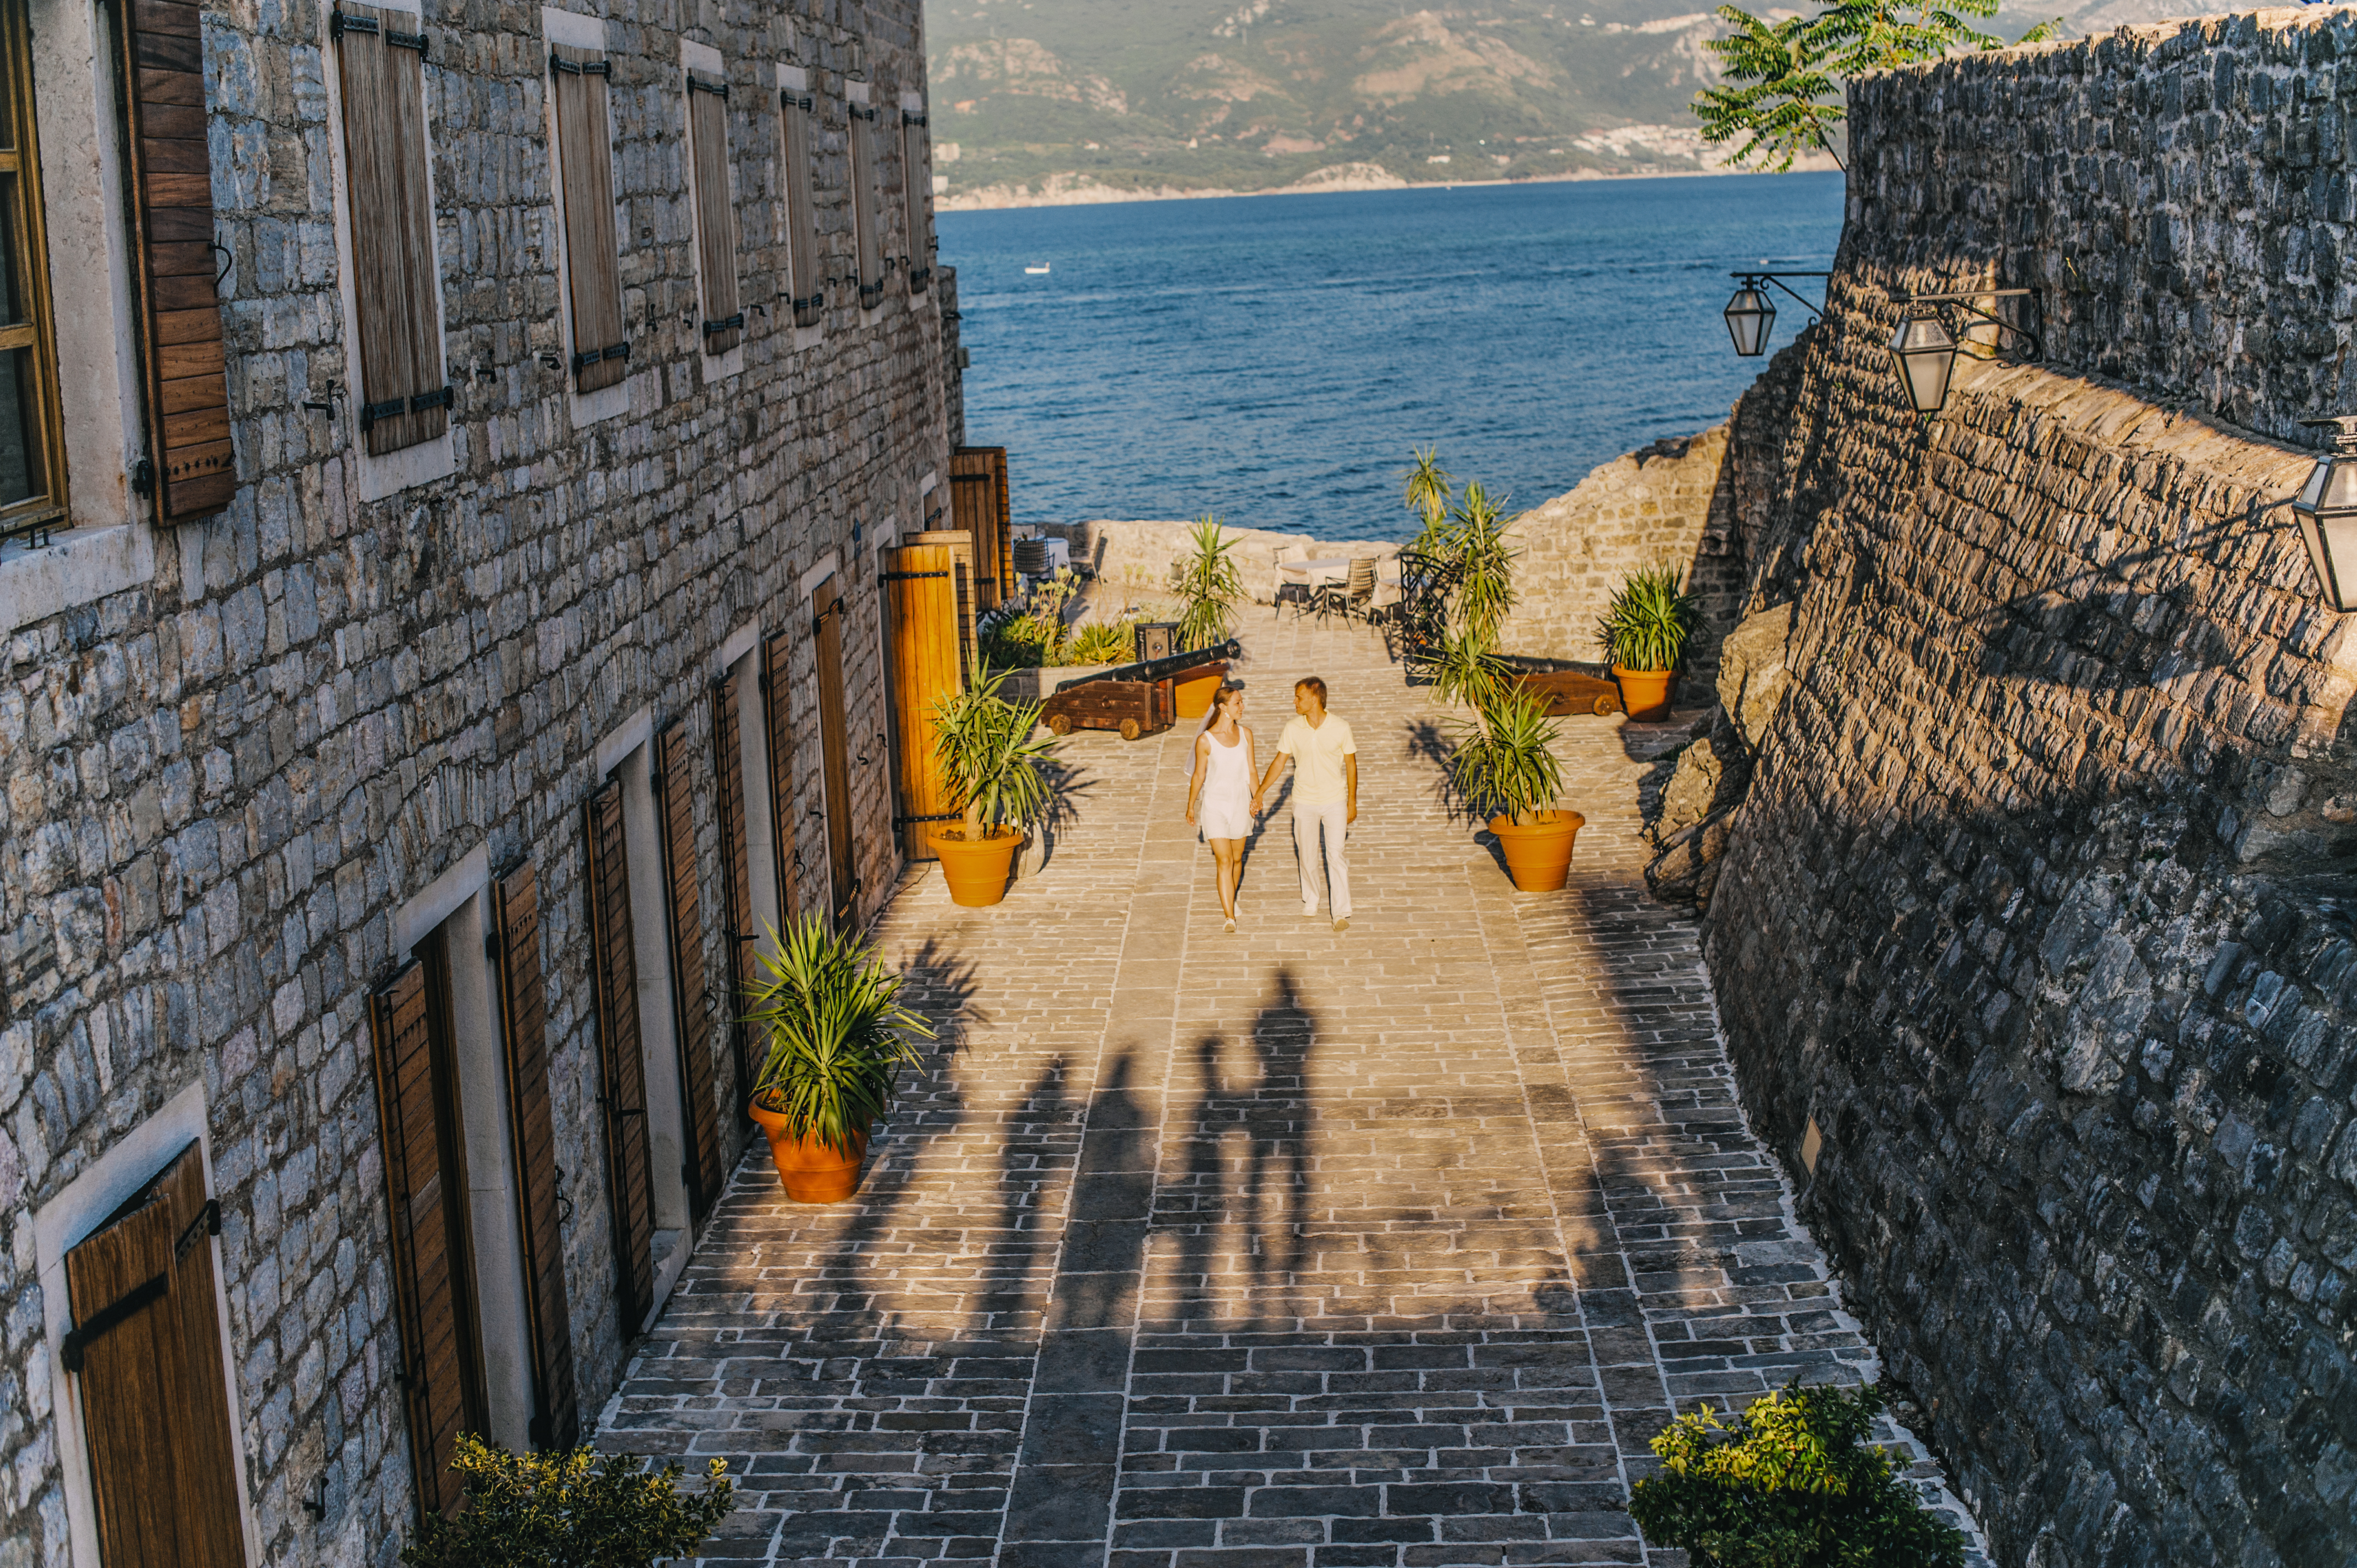 Свадебная фотосессия в Черногории